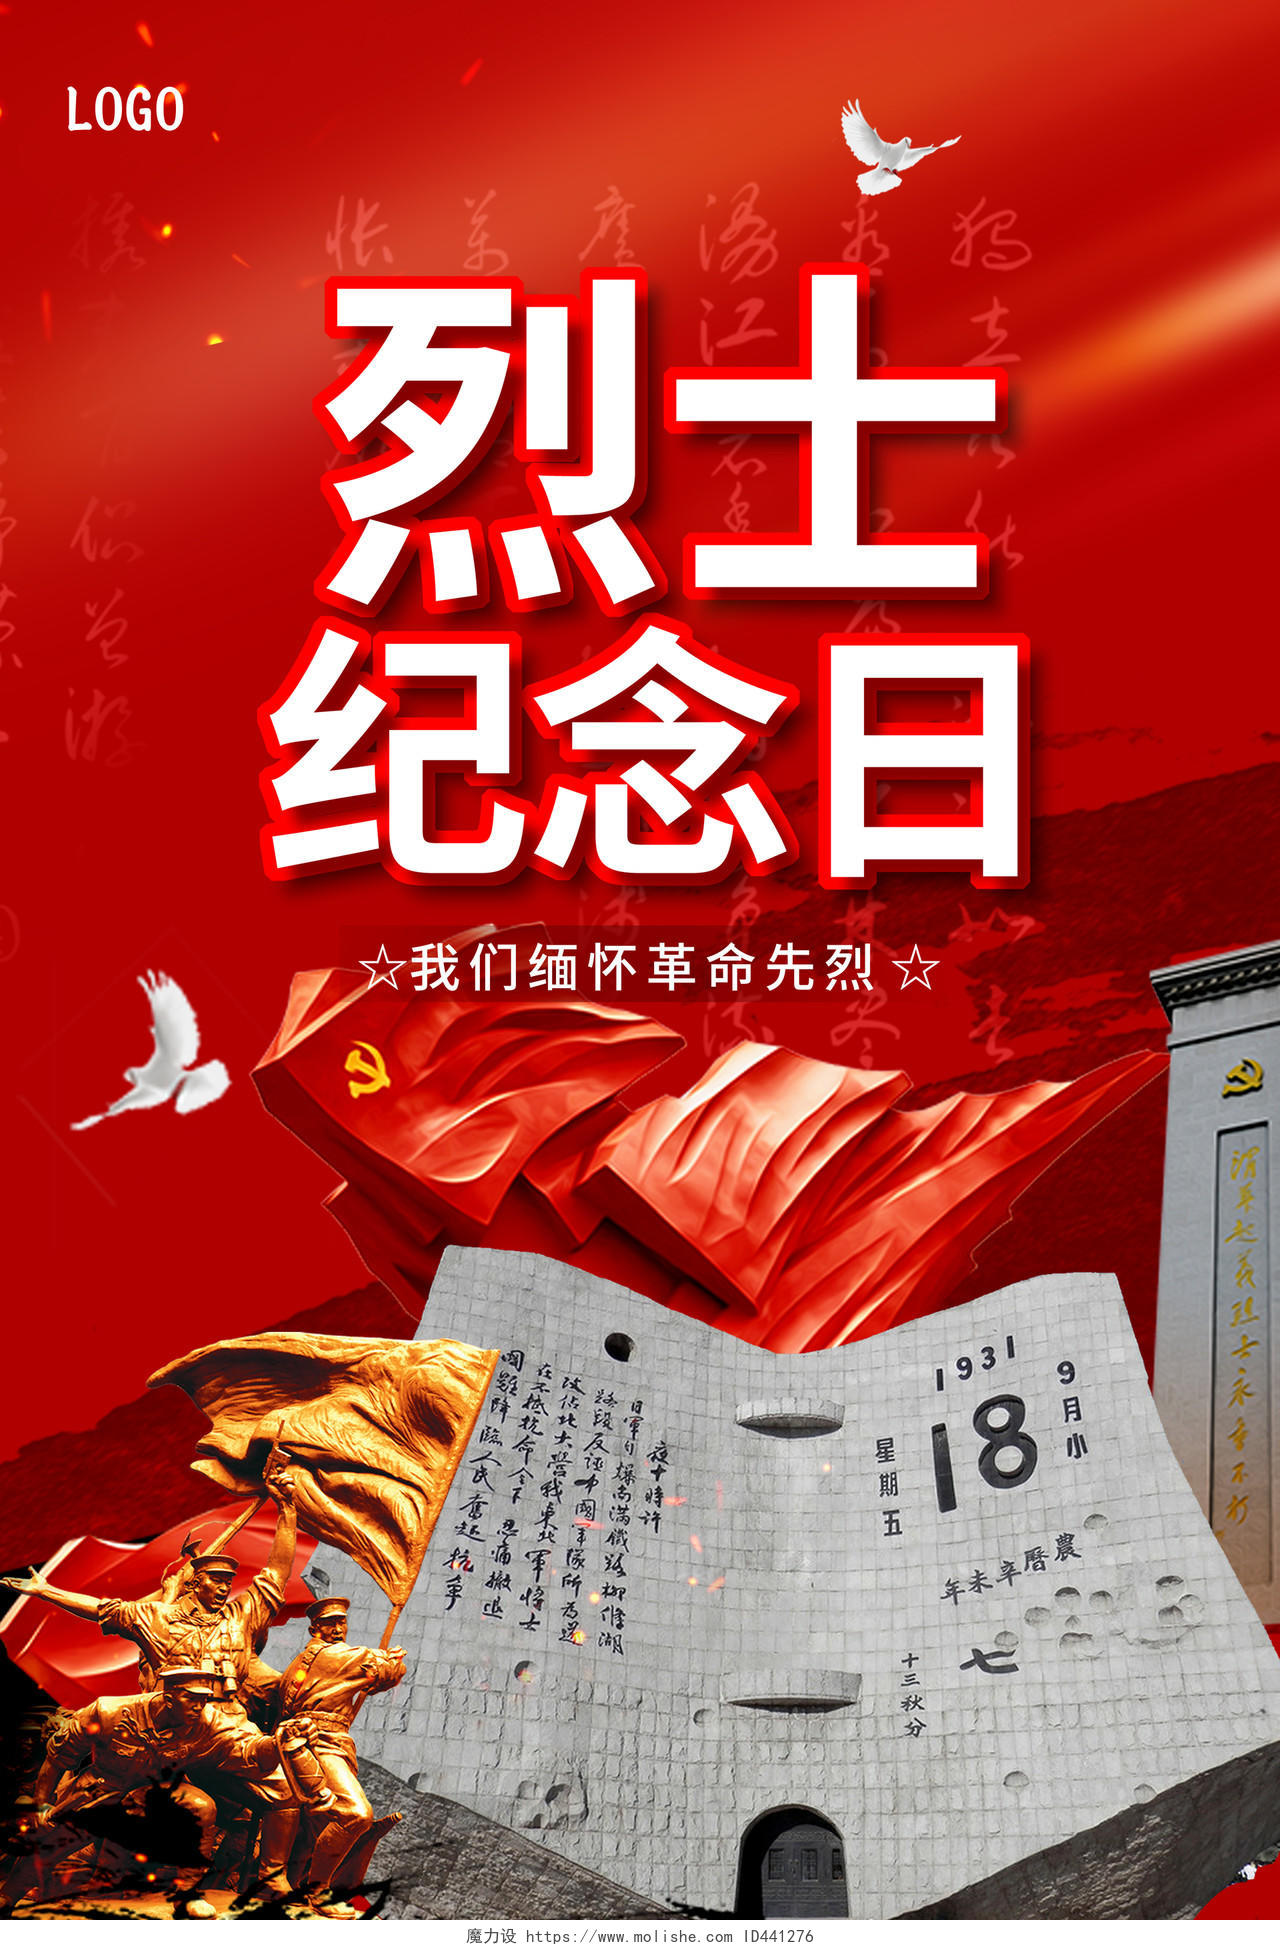 大气创意纪念烈士中国烈士纪念日宣传海报设计